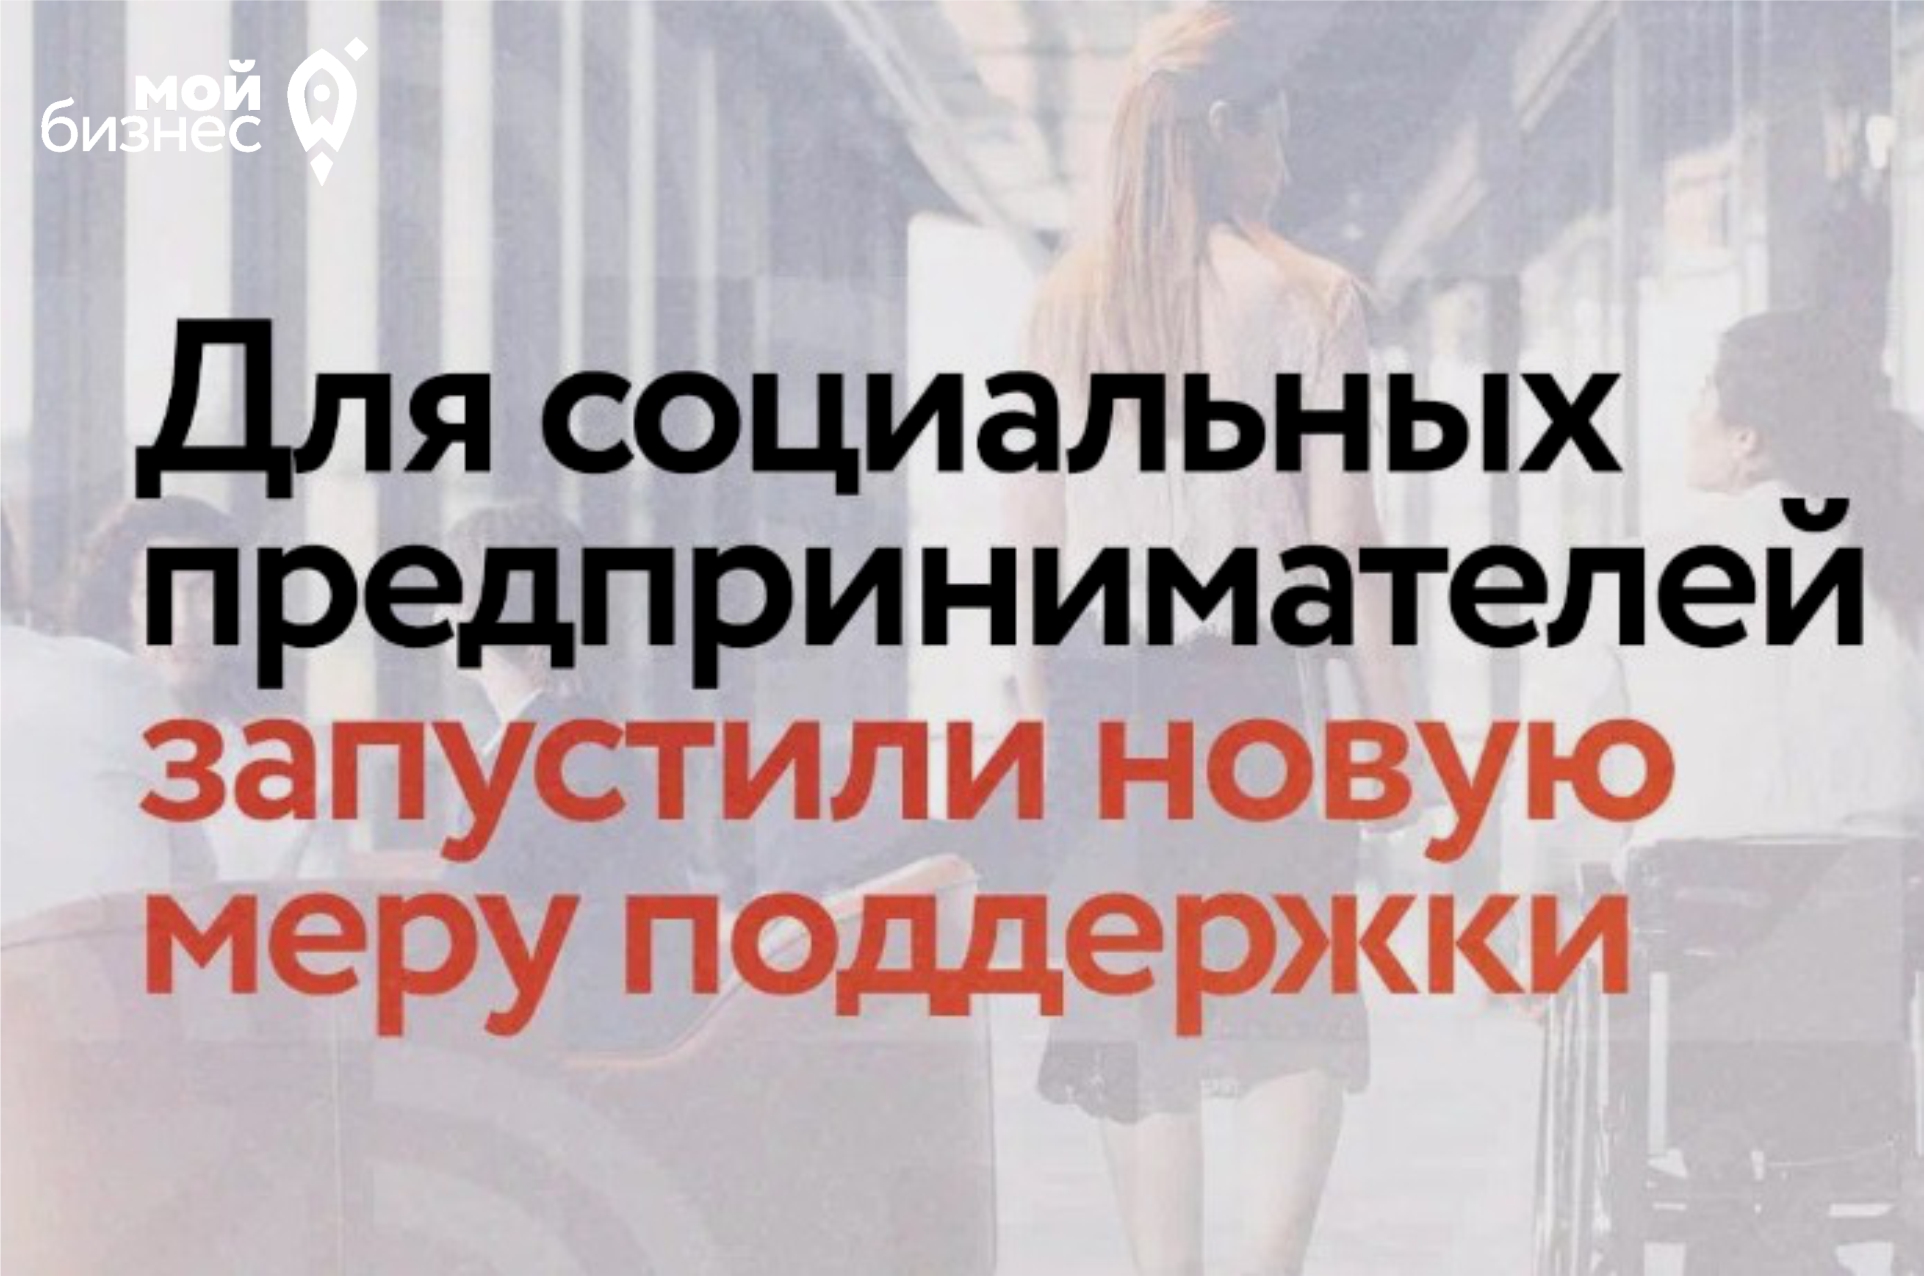 Новая мера поддержки социальным предпринимателям от Минэкономразвития России и hh.ru